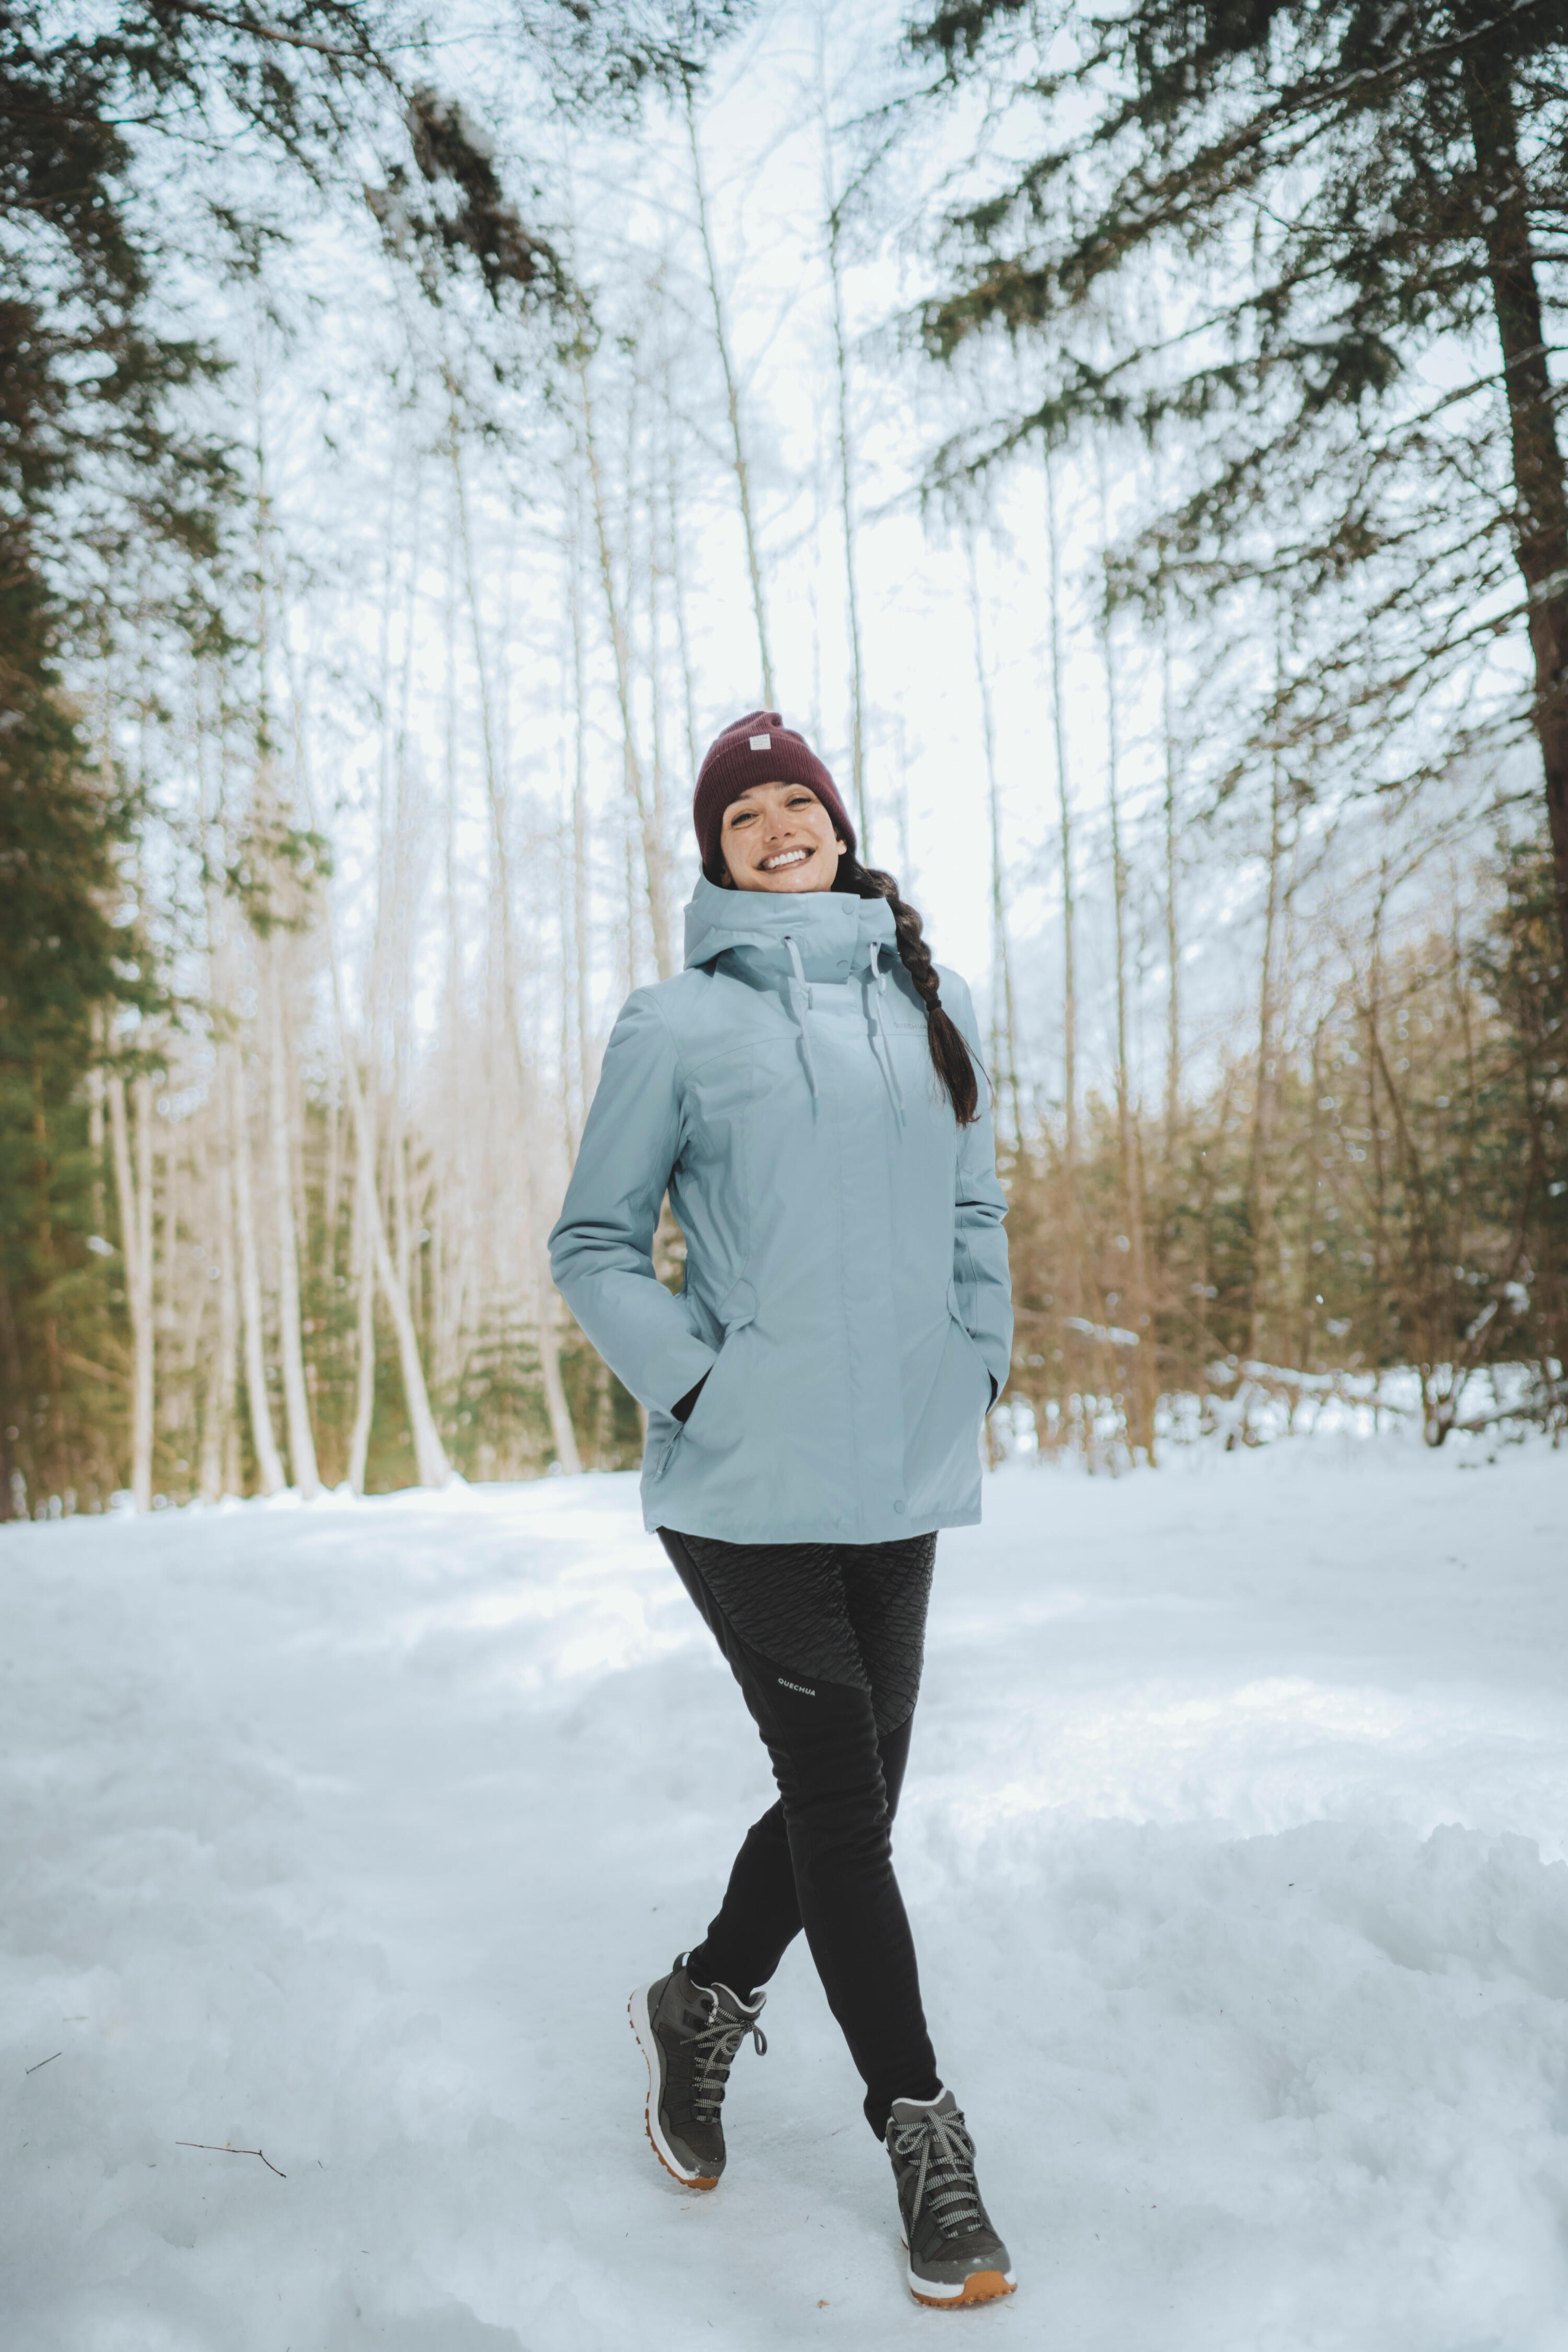 Women’s hiking waterproof winter jacket - SH500 -10°C 3/12